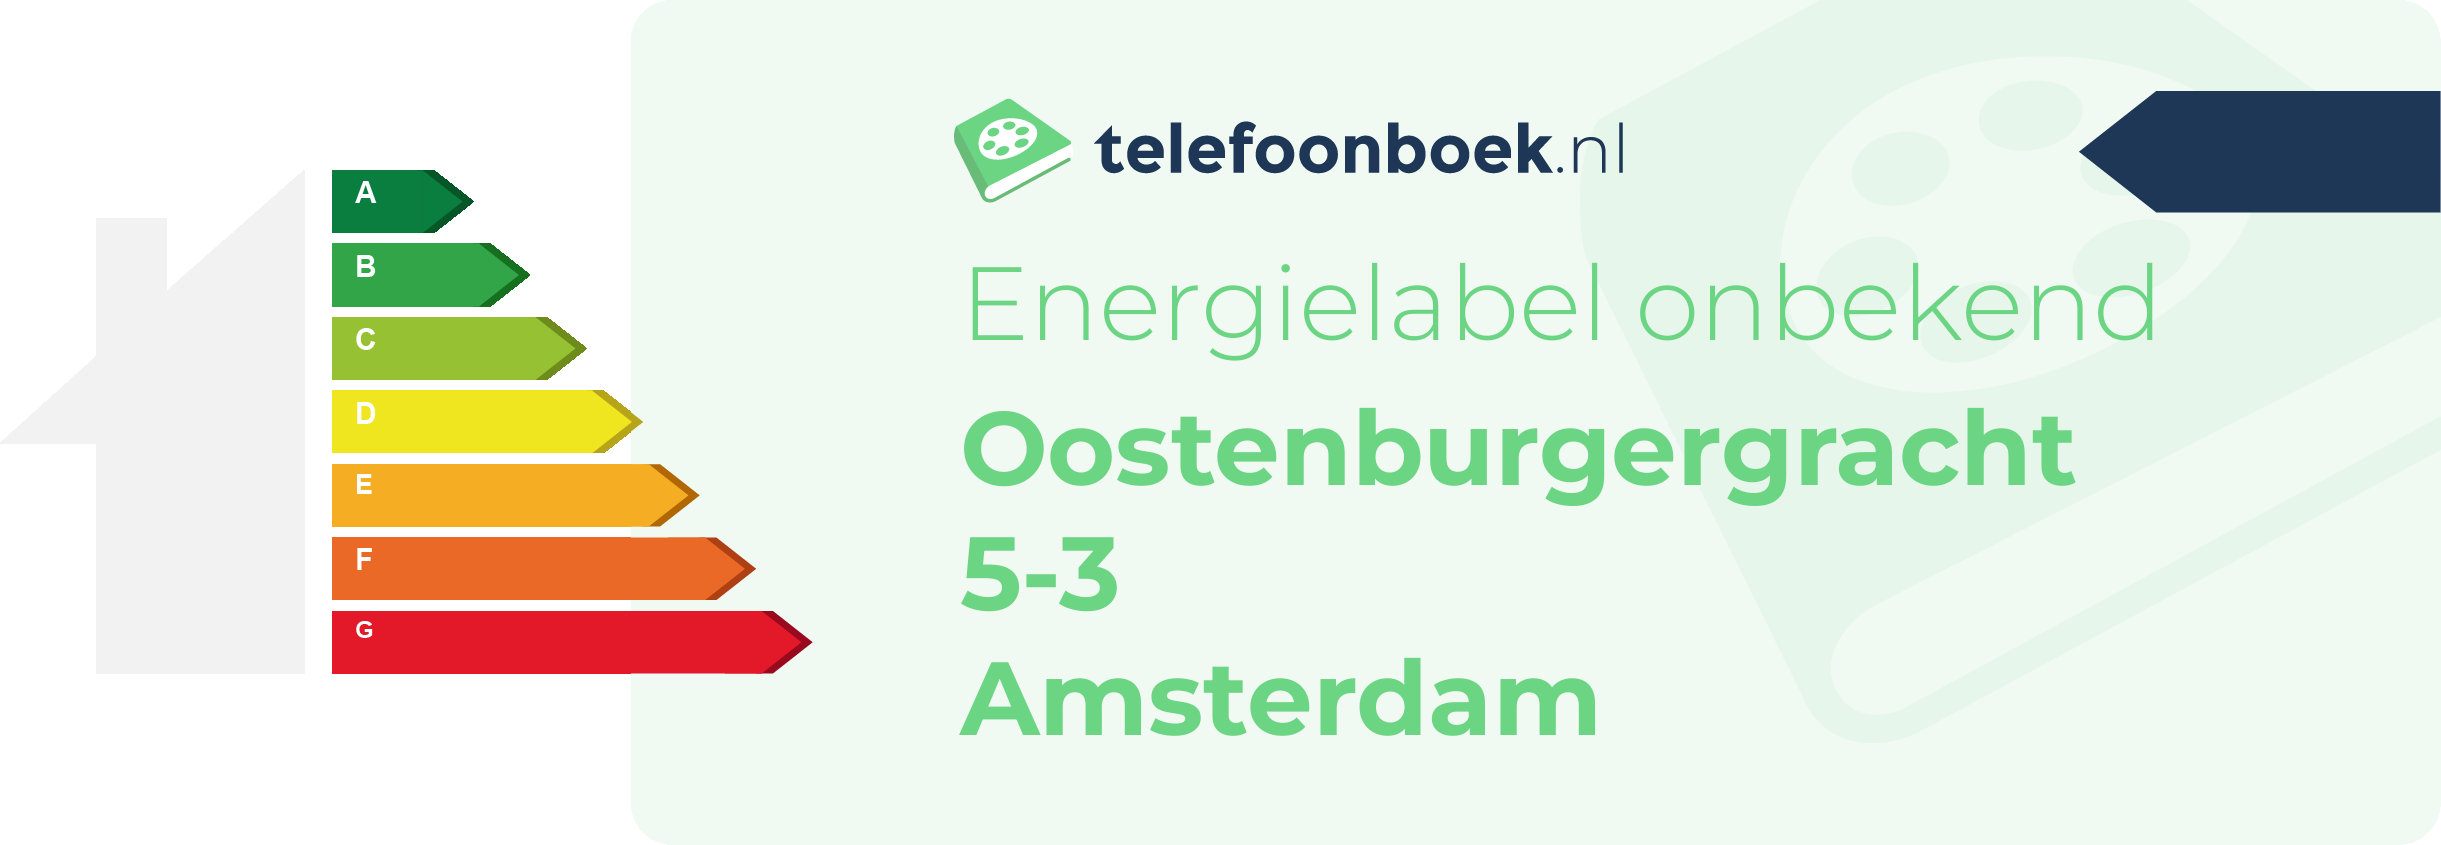 Energielabel Oostenburgergracht 5-3 Amsterdam